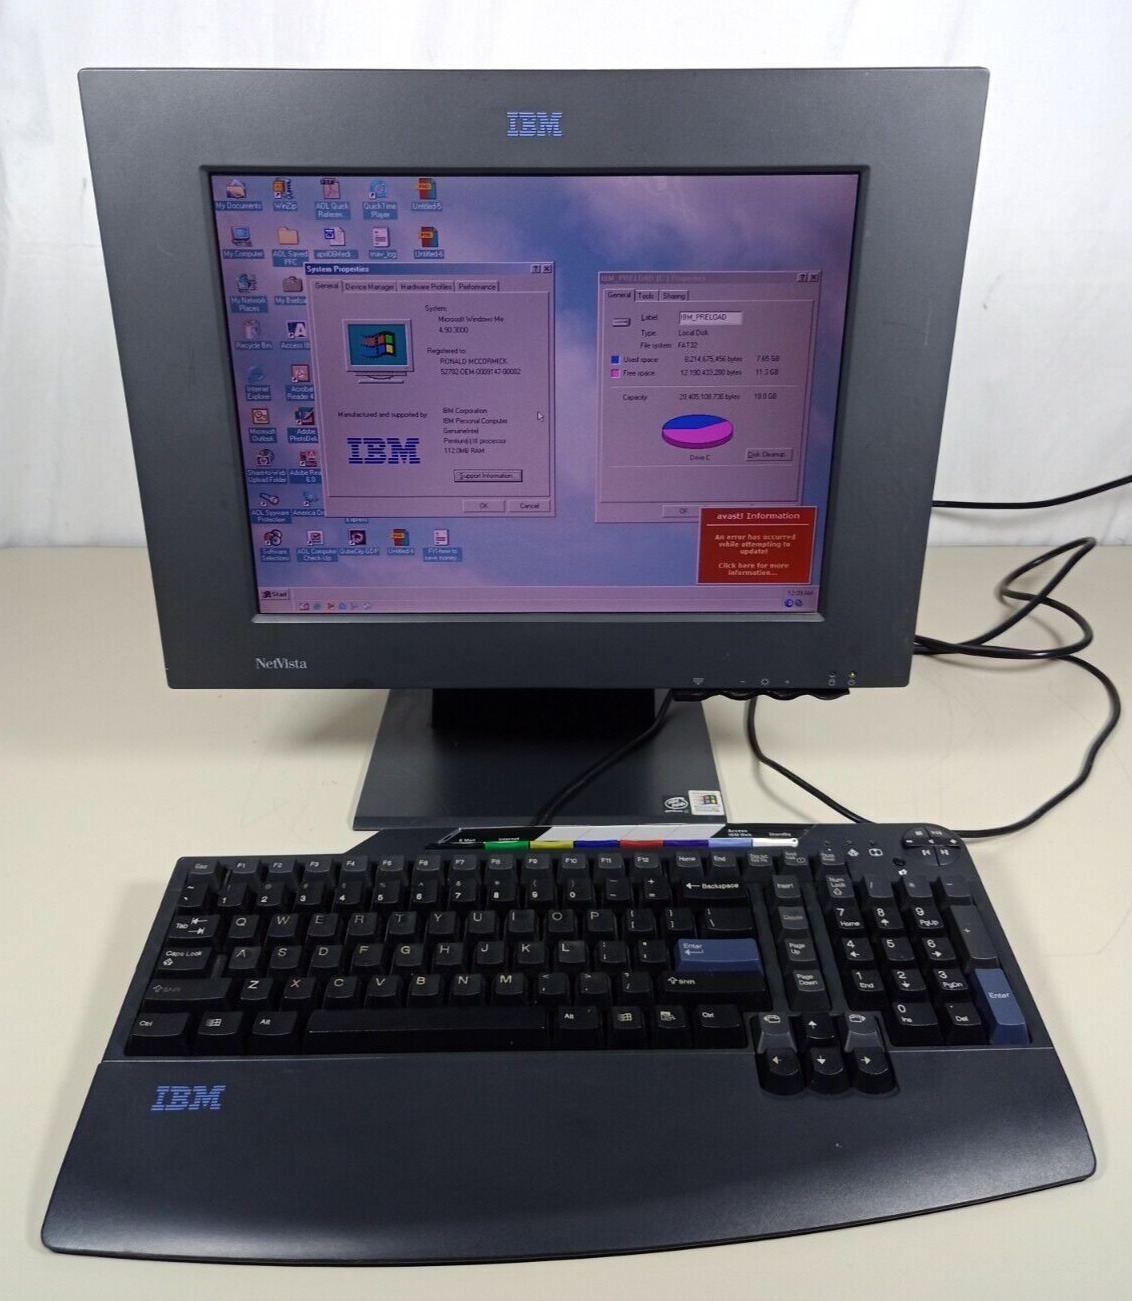 IBM NetVista 2179-77U Desktop Computer Windows ME Pentium III 800MHz 20GB 126MB